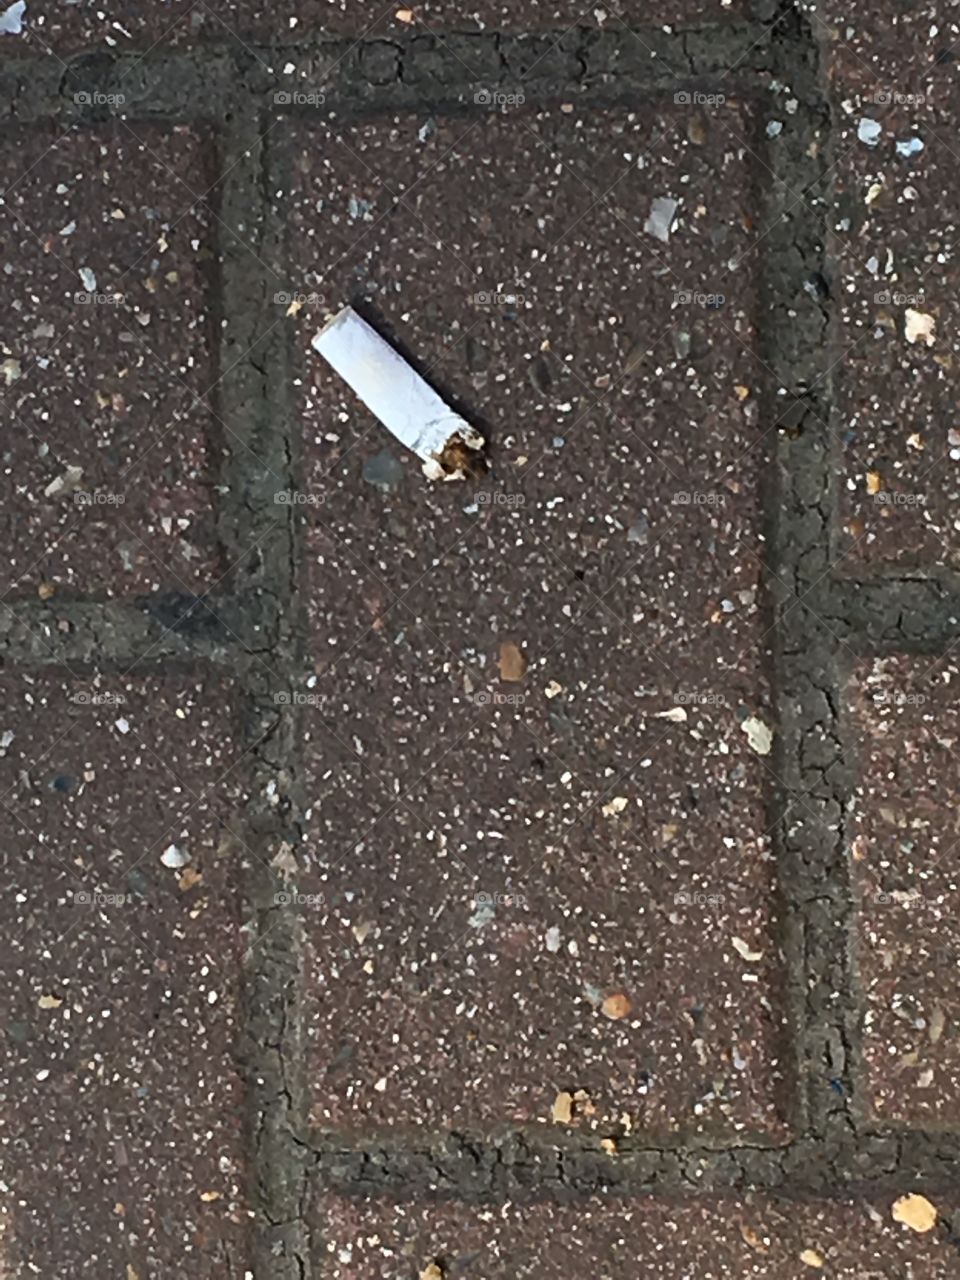 Cigarette butt on floor.